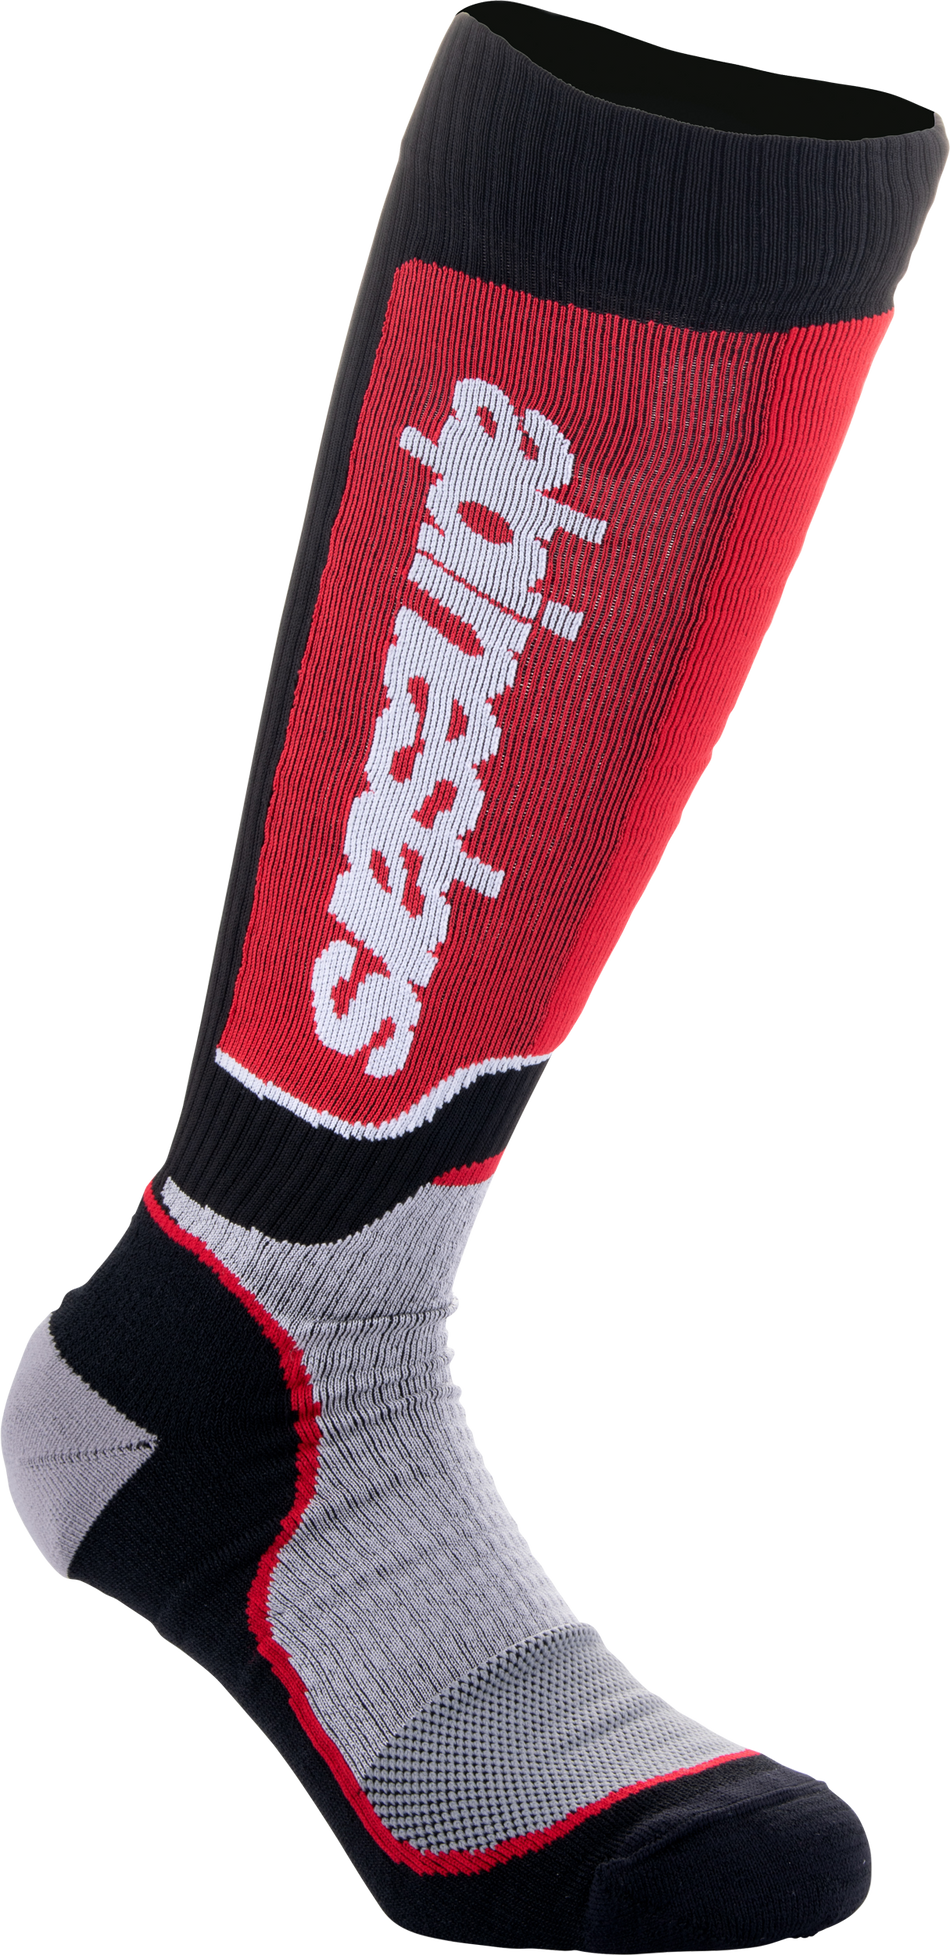 ALPINESTARS Youth Mx Plus Socks Black/Grey/Red Md/Lg 4742324-1215-M/L